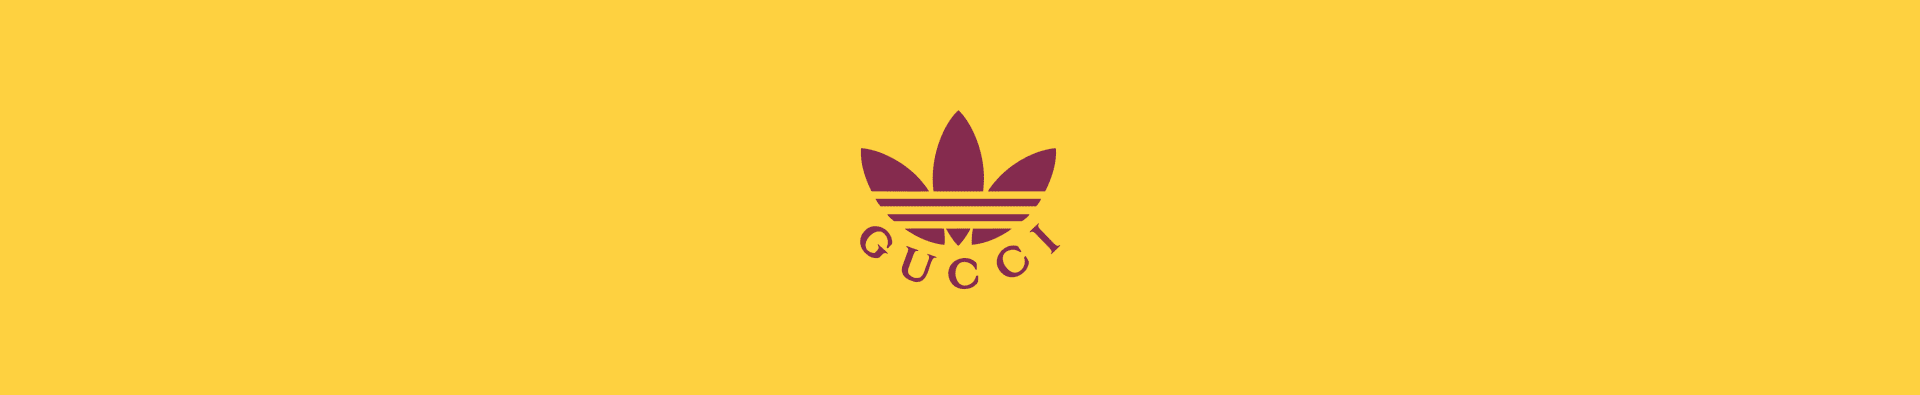 adidas x Gucci logo